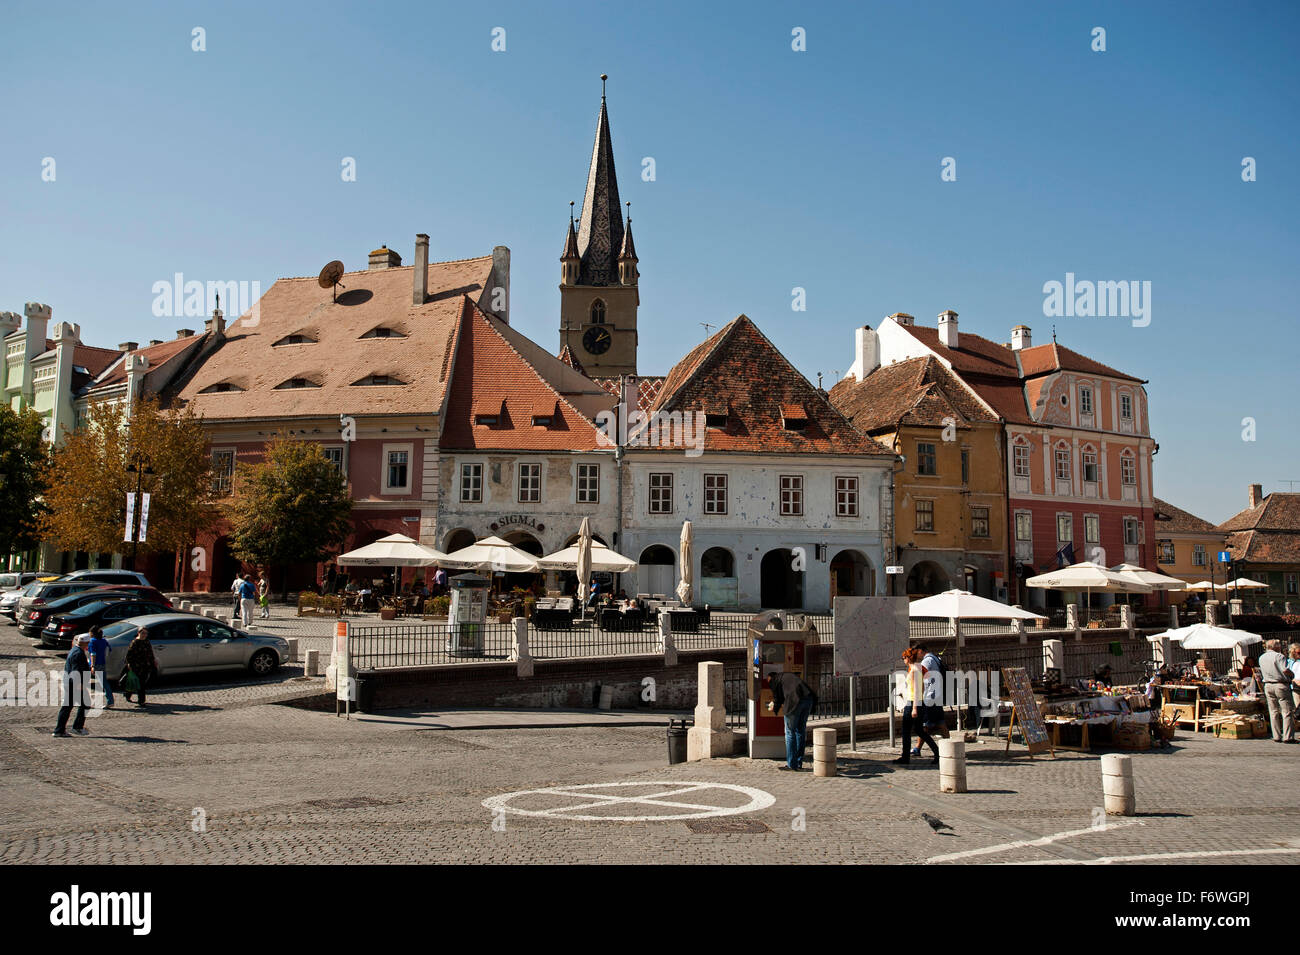 Piata Huet dans la partie historique de la ville, Sibiu, Transylvanie, Roumanie Banque D'Images